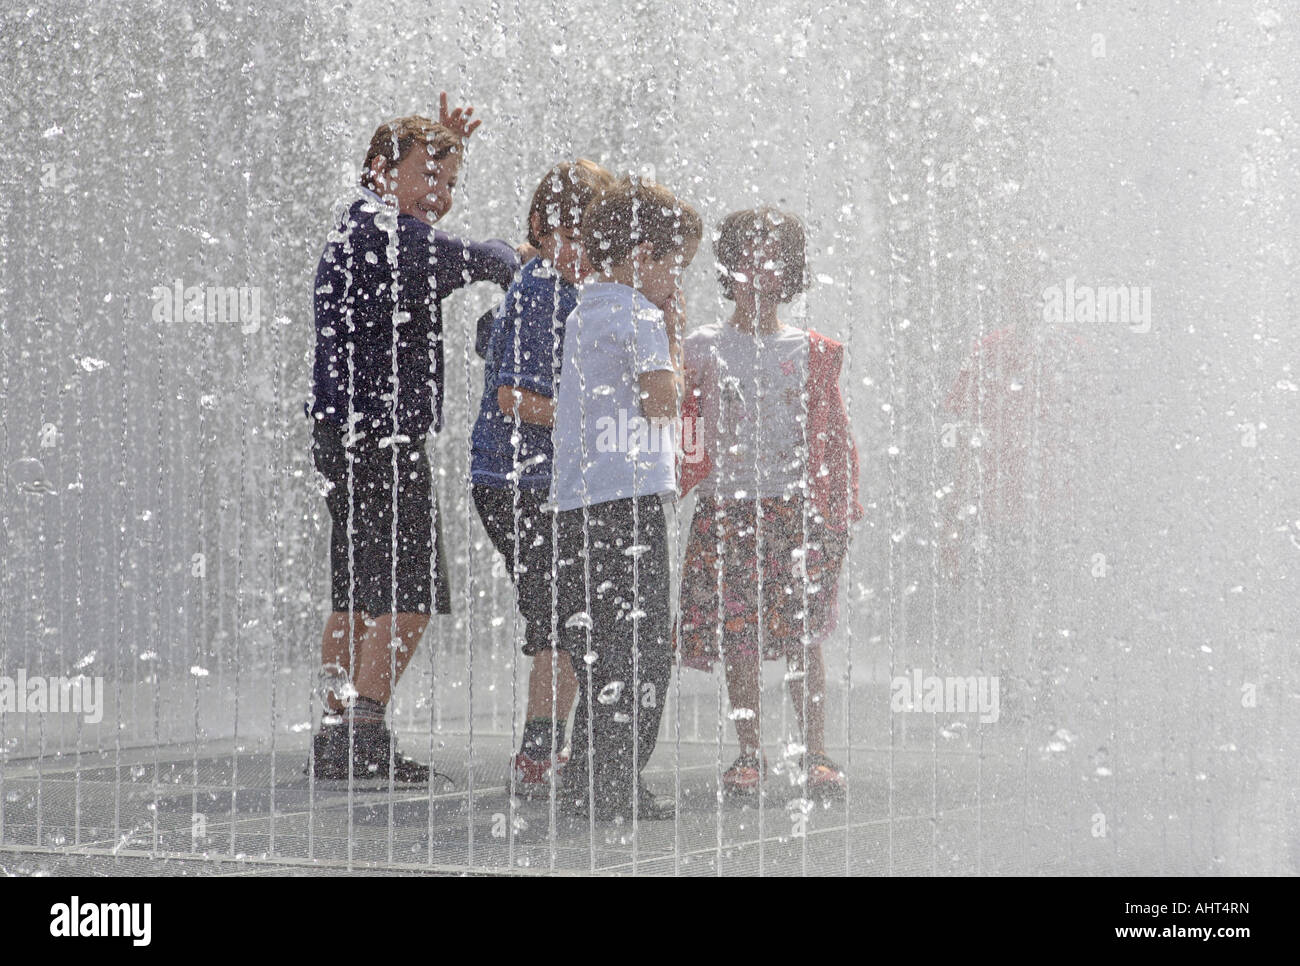 Apparaissant Chambres. La sculpture de l'eau par Jeppe Hein. Royal Festival Hall, South Bank, Londres, Angleterre, Royaume-Uni Banque D'Images